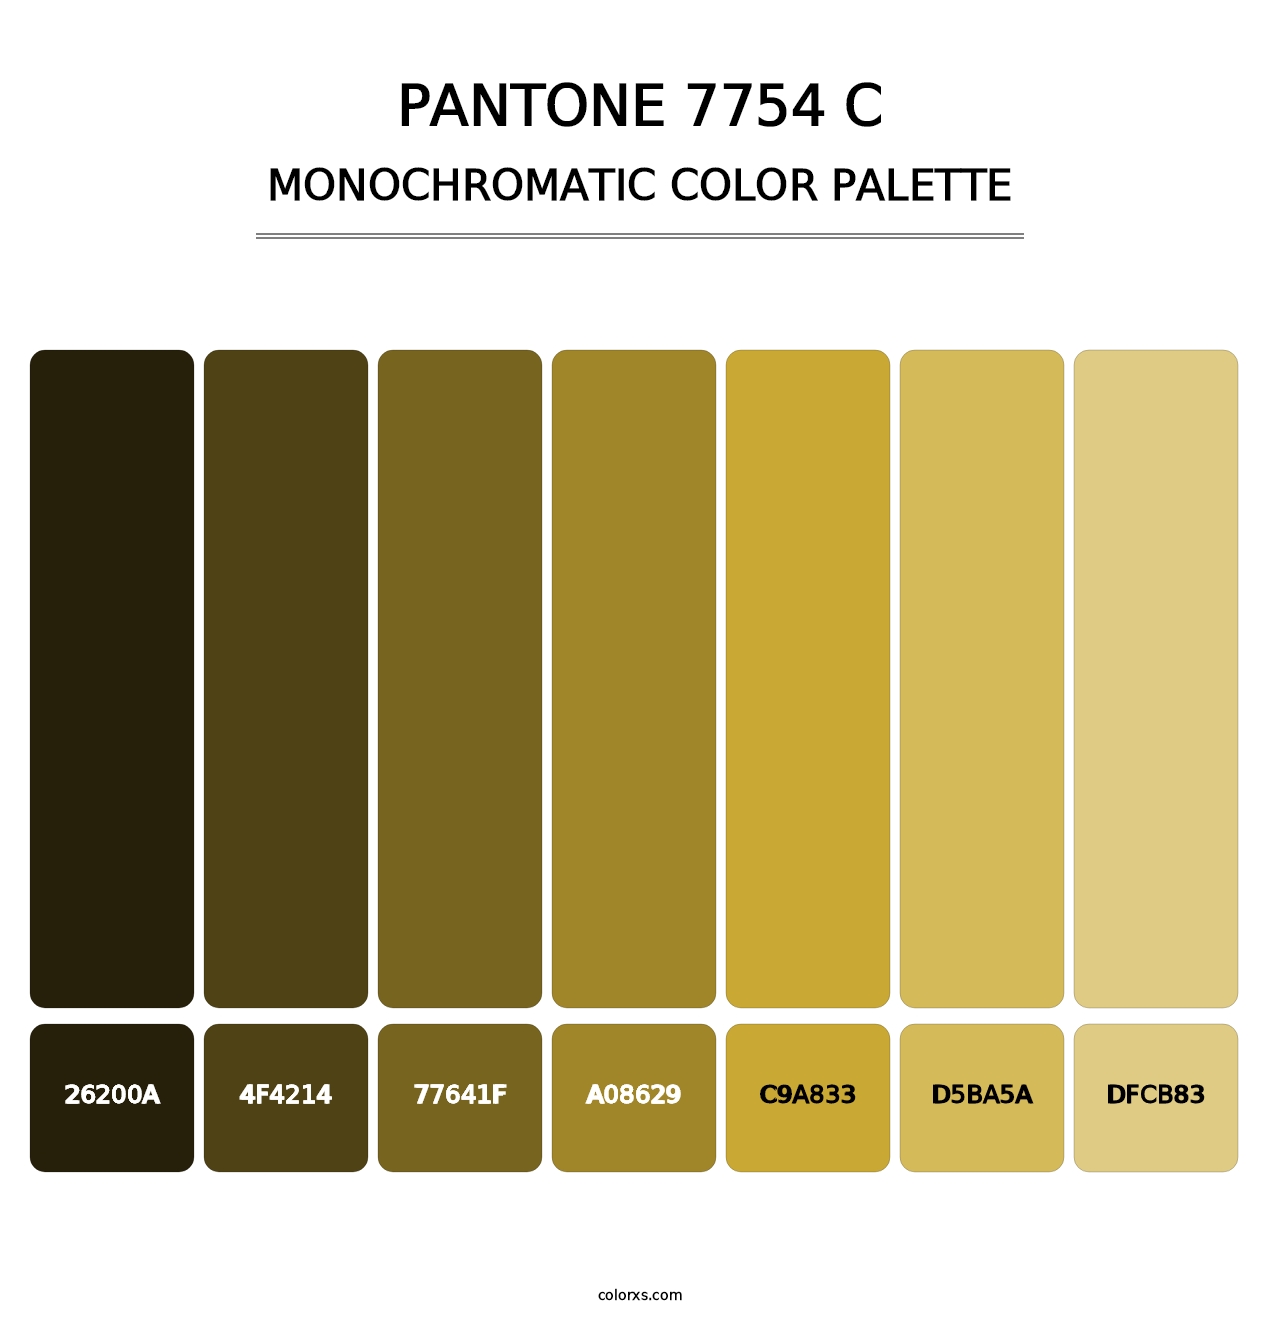 PANTONE 7754 C - Monochromatic Color Palette